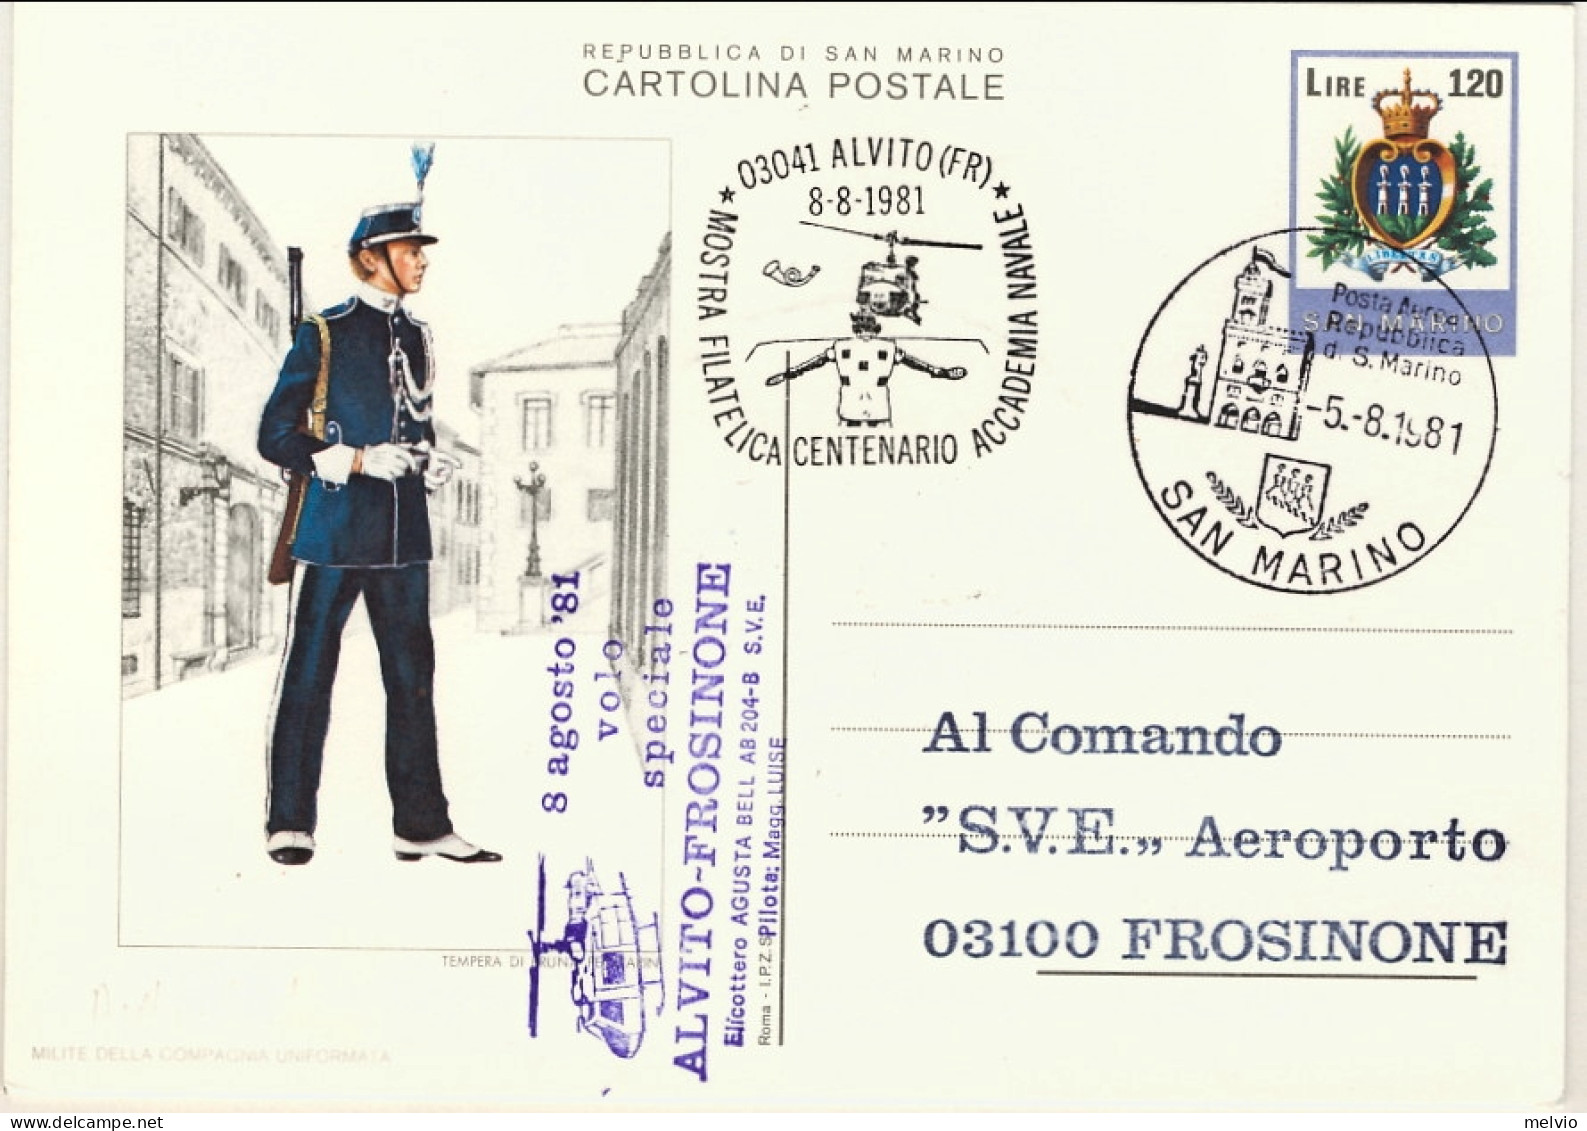 San Marino-1981 Cartolina Postale L.120 Stemma Mostra Filatelica Del Centenario, - Posta Aerea